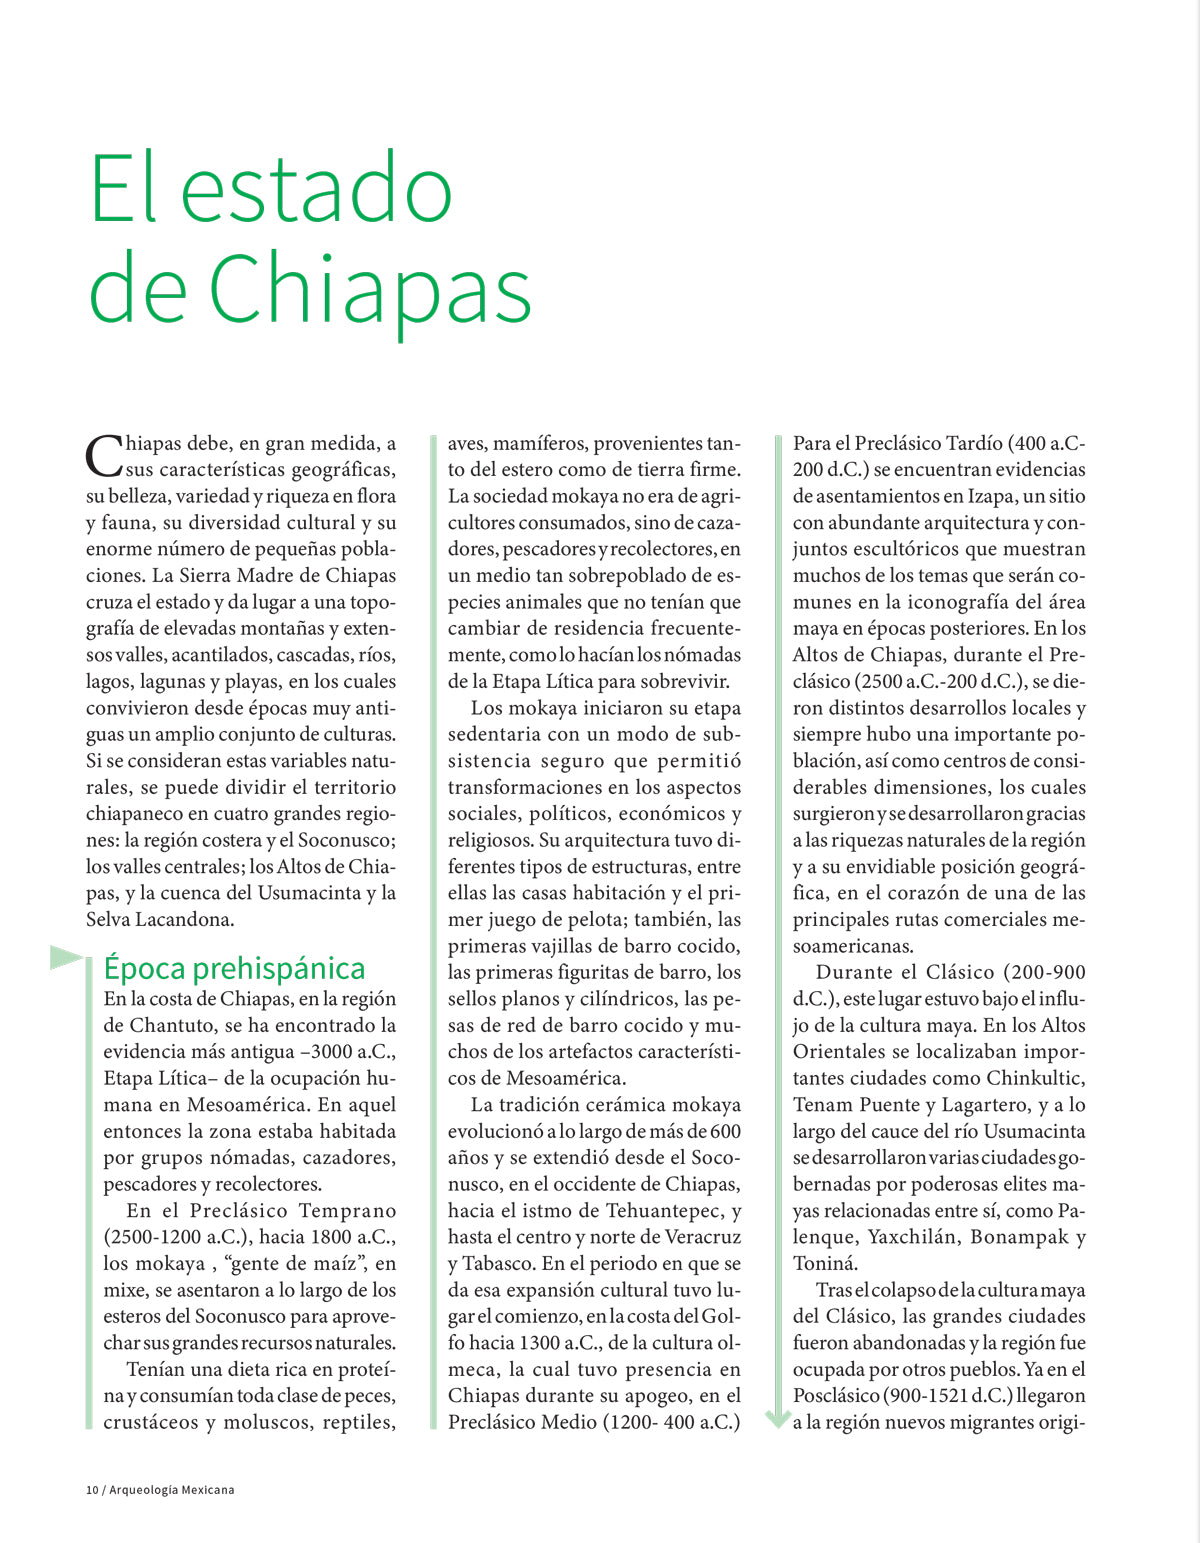 Recorridos por Chiapas. Guía de viajeros al mundo maya